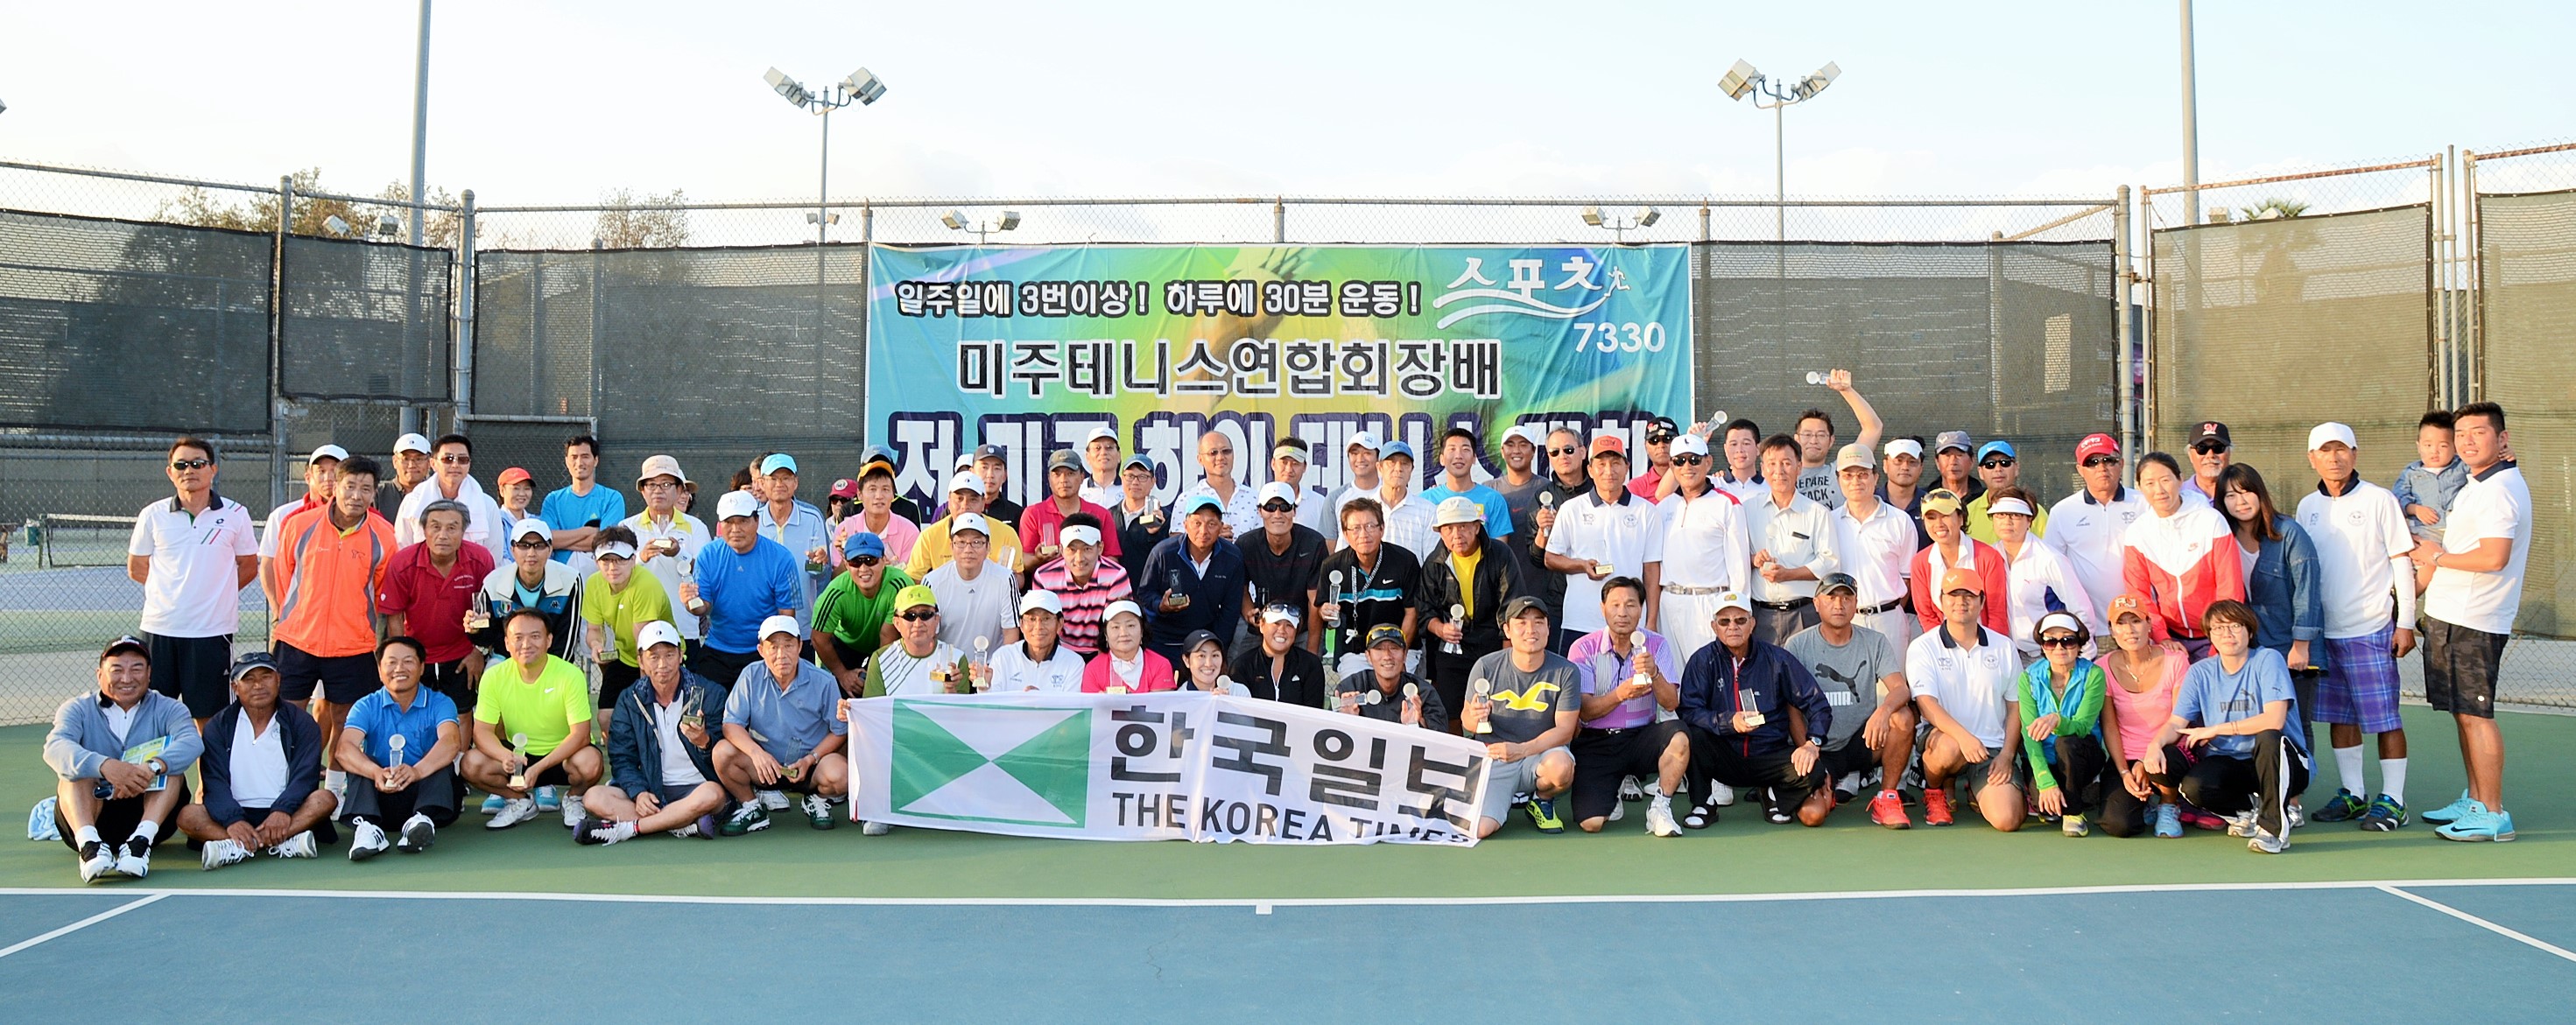 The first Korea Times U.S. Korean Tennis Tournament (Kim Young-jae/The Korea Times)